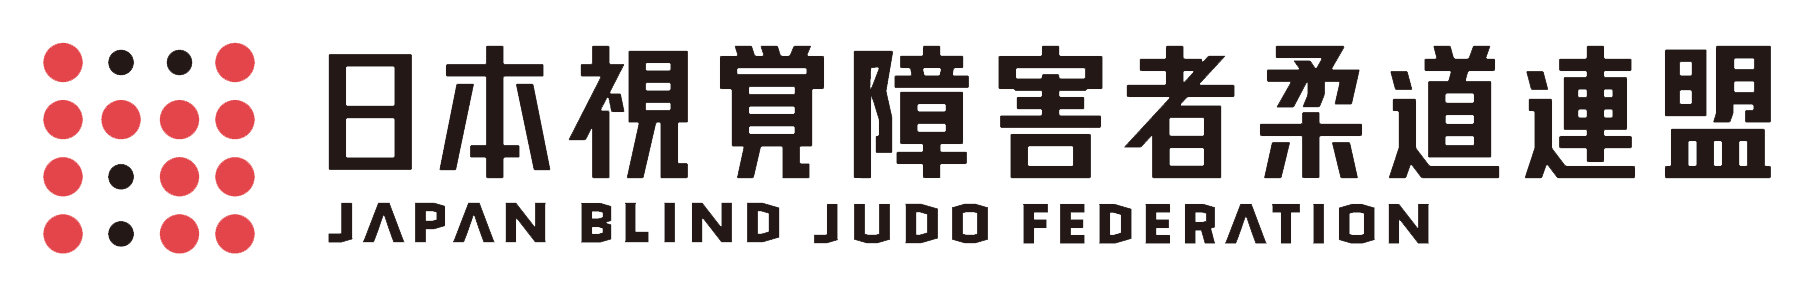 日本視覚障害者柔道連盟ロゴ